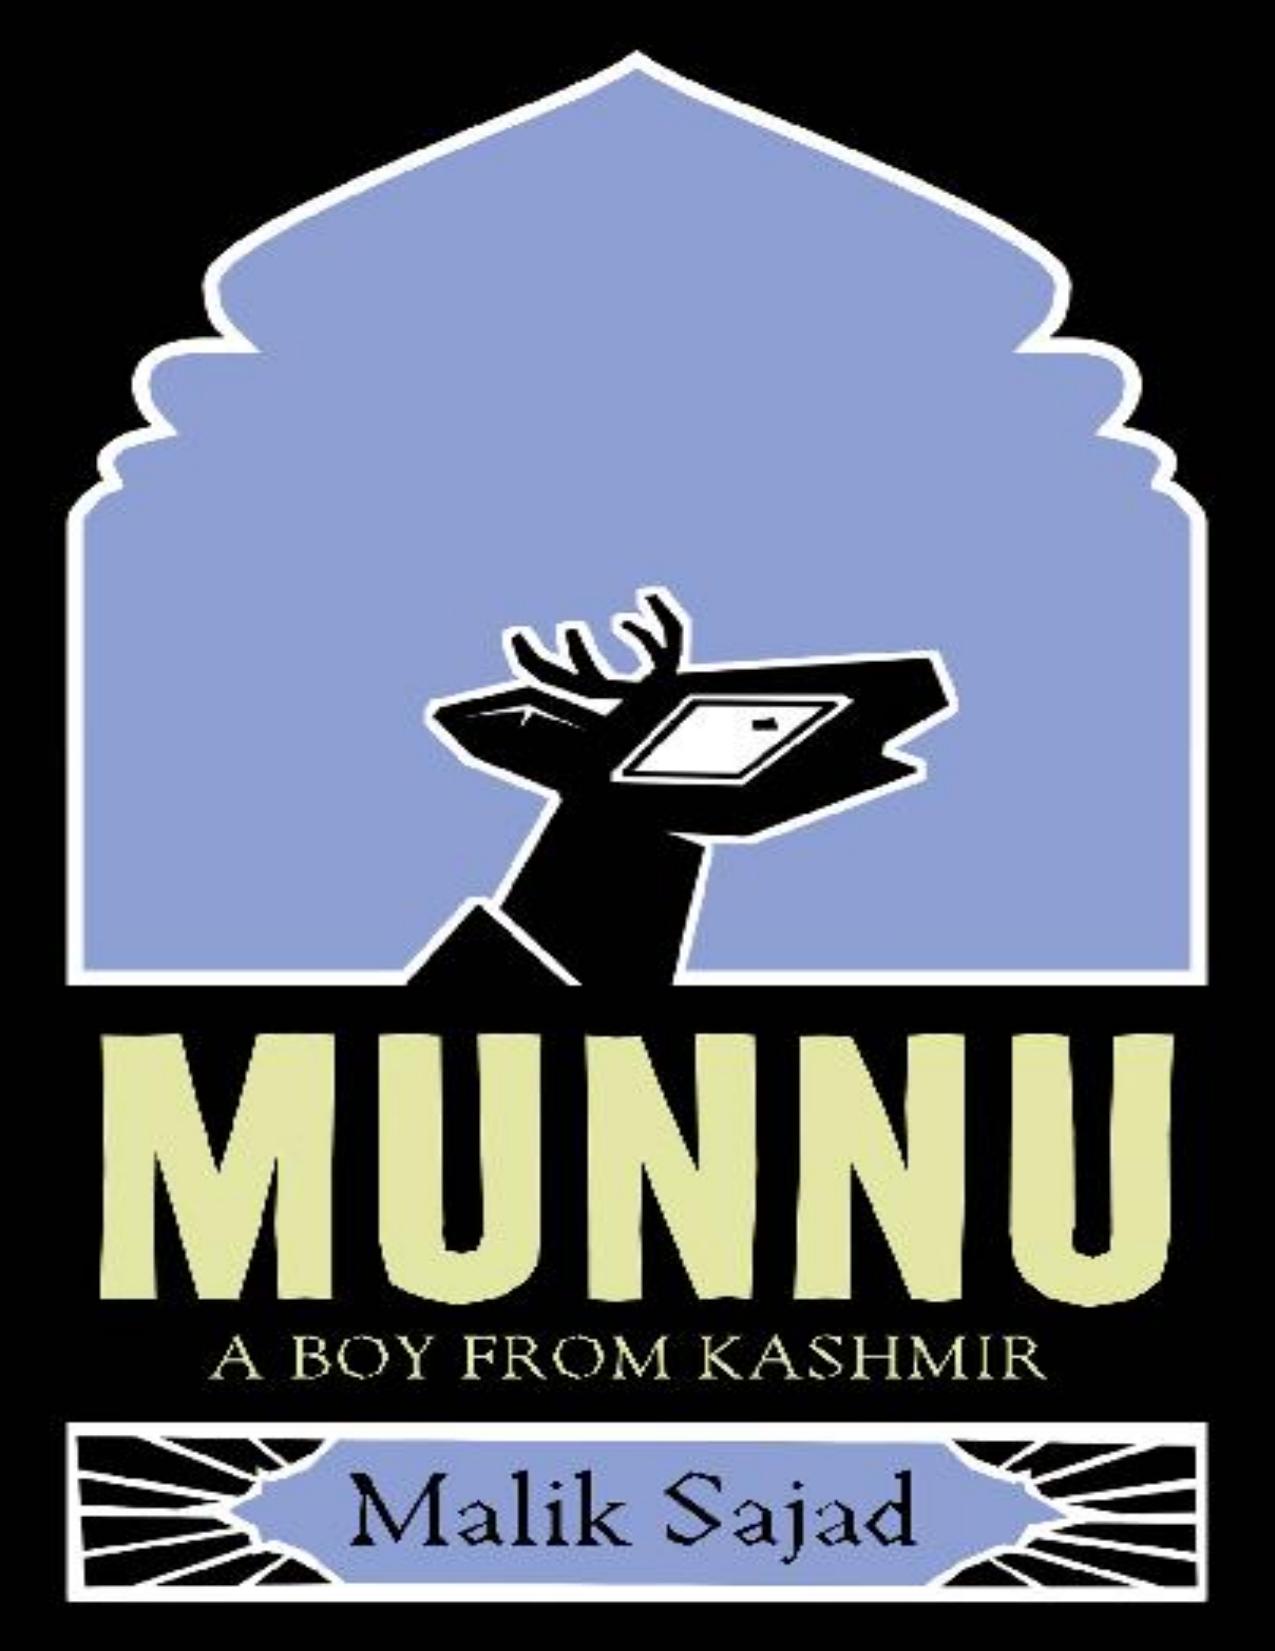 Munnu: A Boy From Kashmir by Malik Sajad